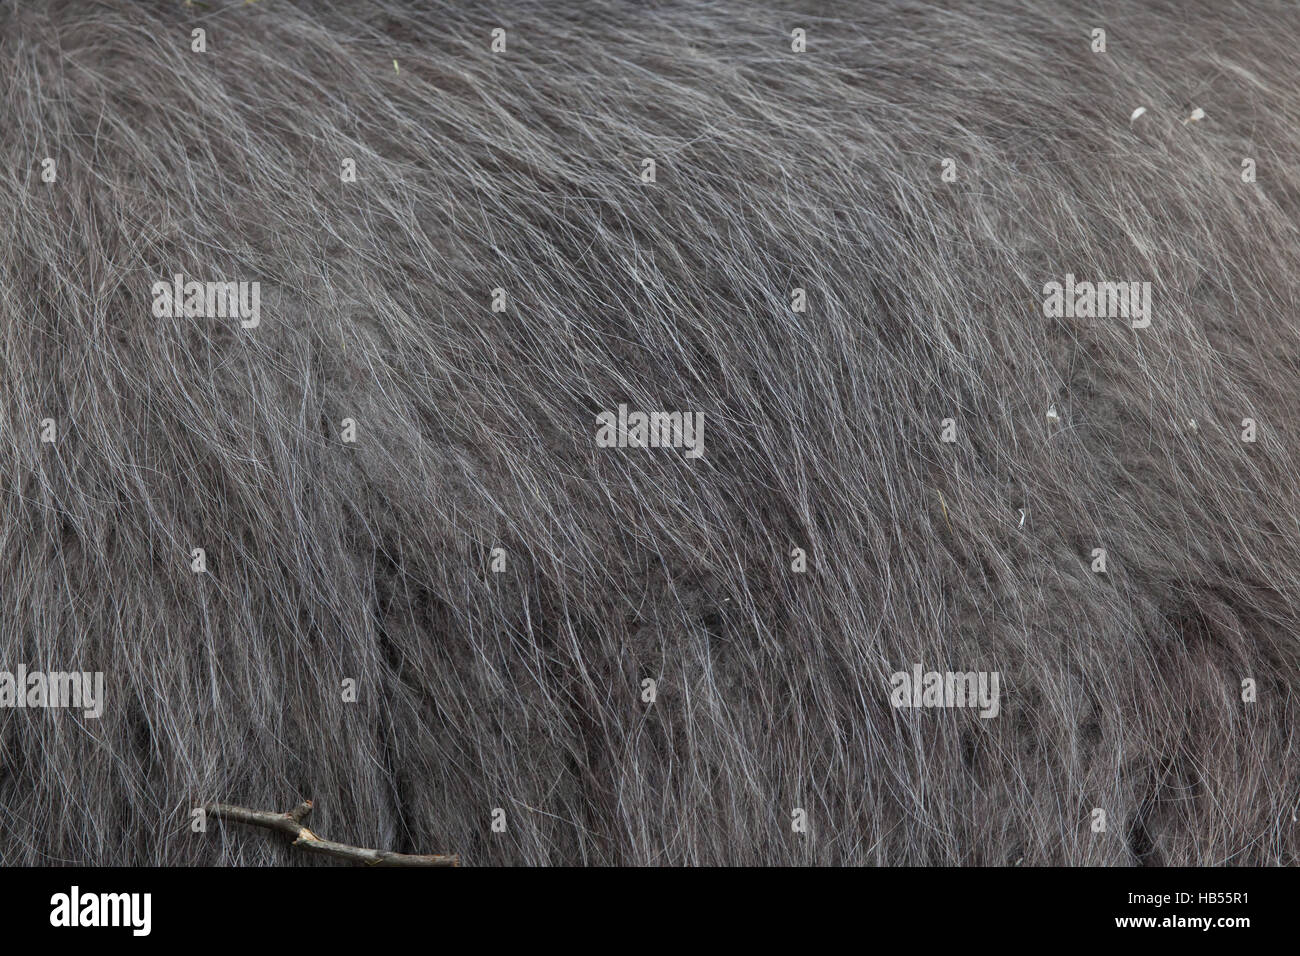 Llama (Lama glama). Fur texture. Stock Photo